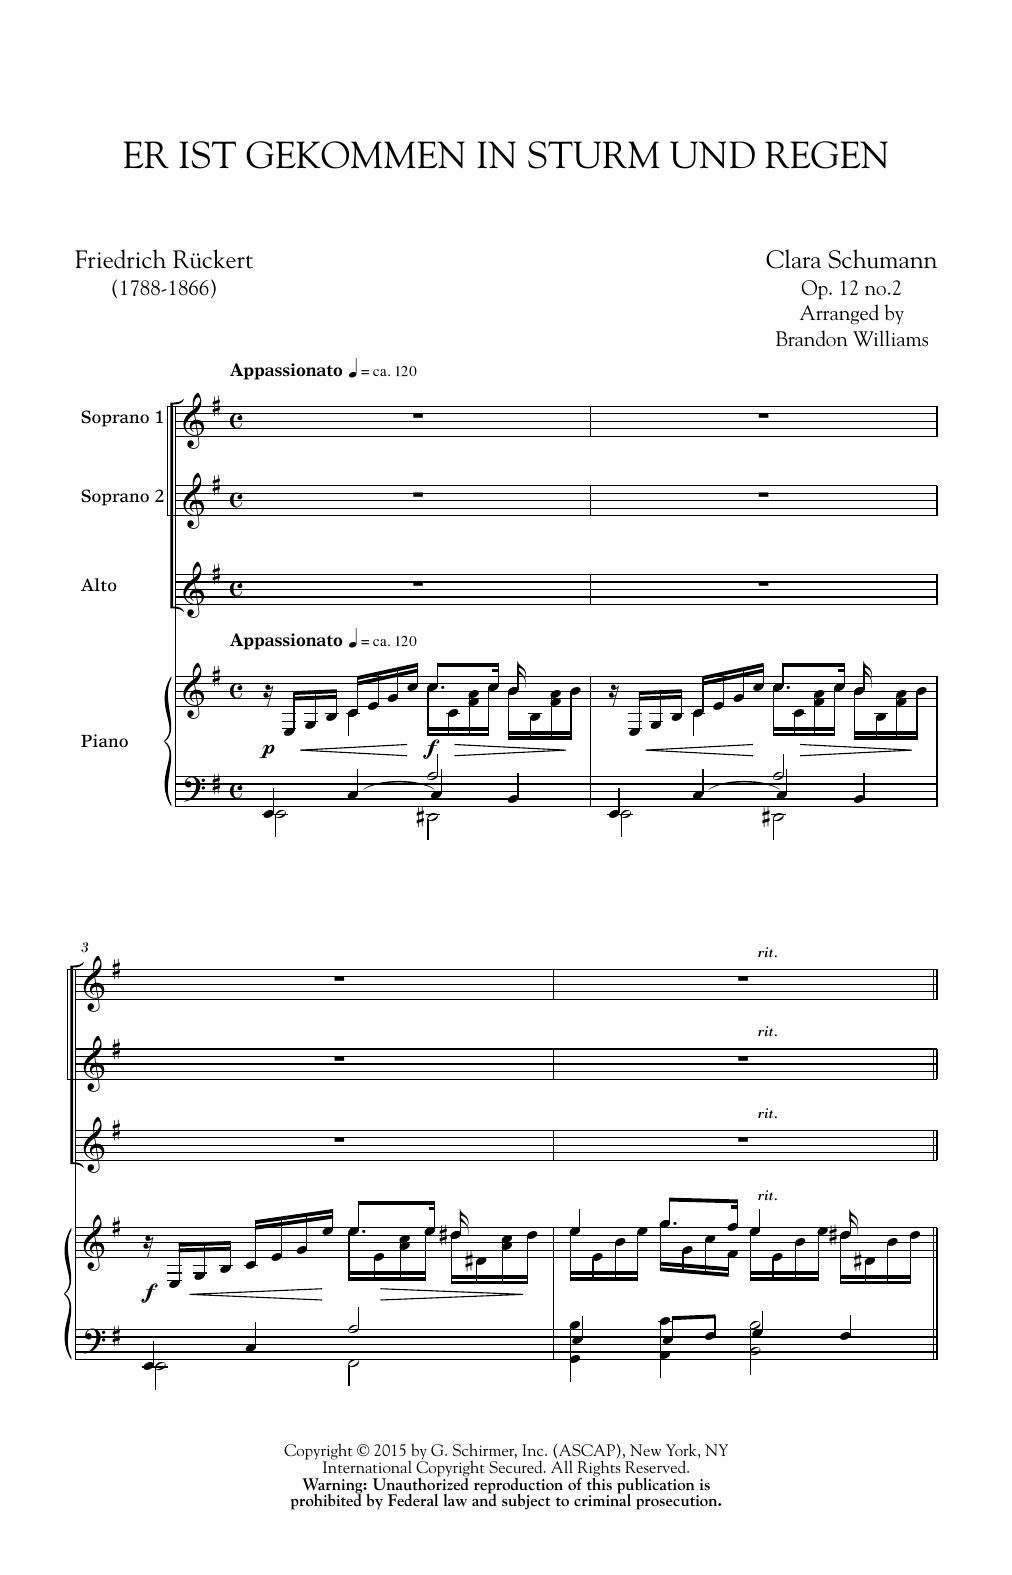 Clara Schumann Er Ist Gekommen In Sturm Und Regen (arr. Brandon Williams) Sheet Music Notes & Chords for SSA - Download or Print PDF